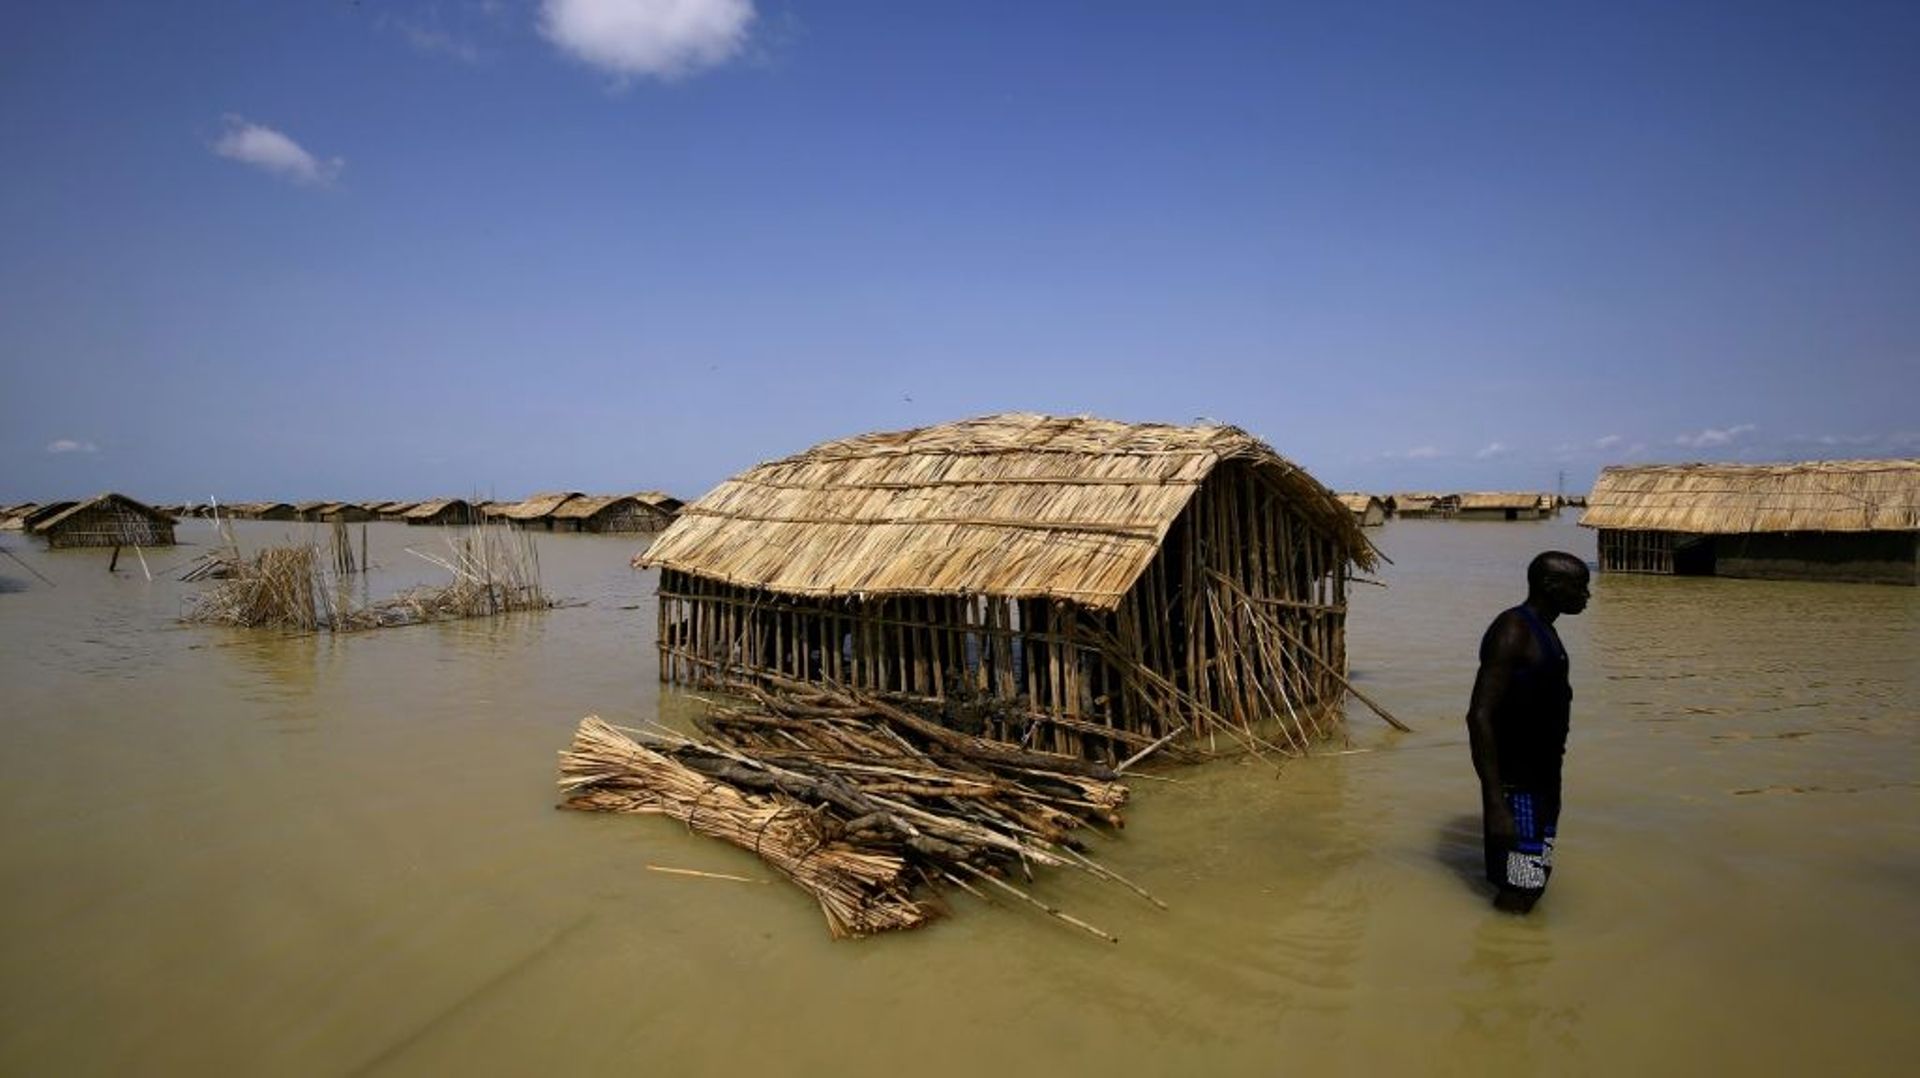 Un camp de réfugiés sud-soudanais inondé par le Nil blanc après de fortes pluies près d'Al Qanaa, au Soudan, le 13 septembre 2021 